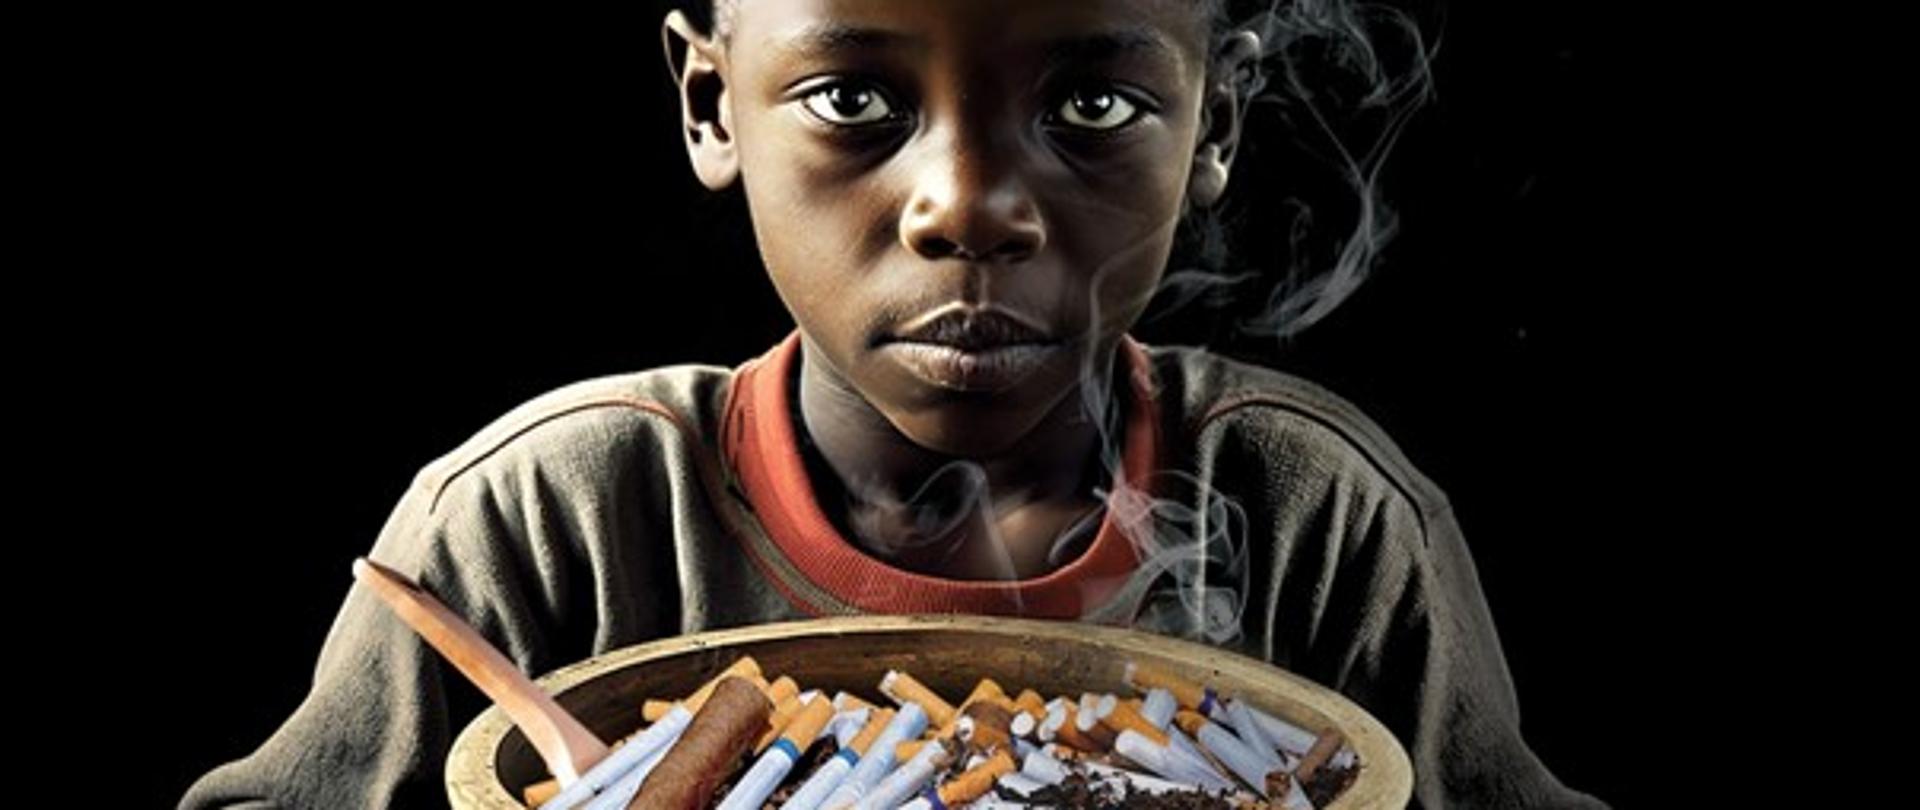 Czarnoskóry chłopiec trzymający w ręku popielniczkę wypełnioną niedopałkami papierosów